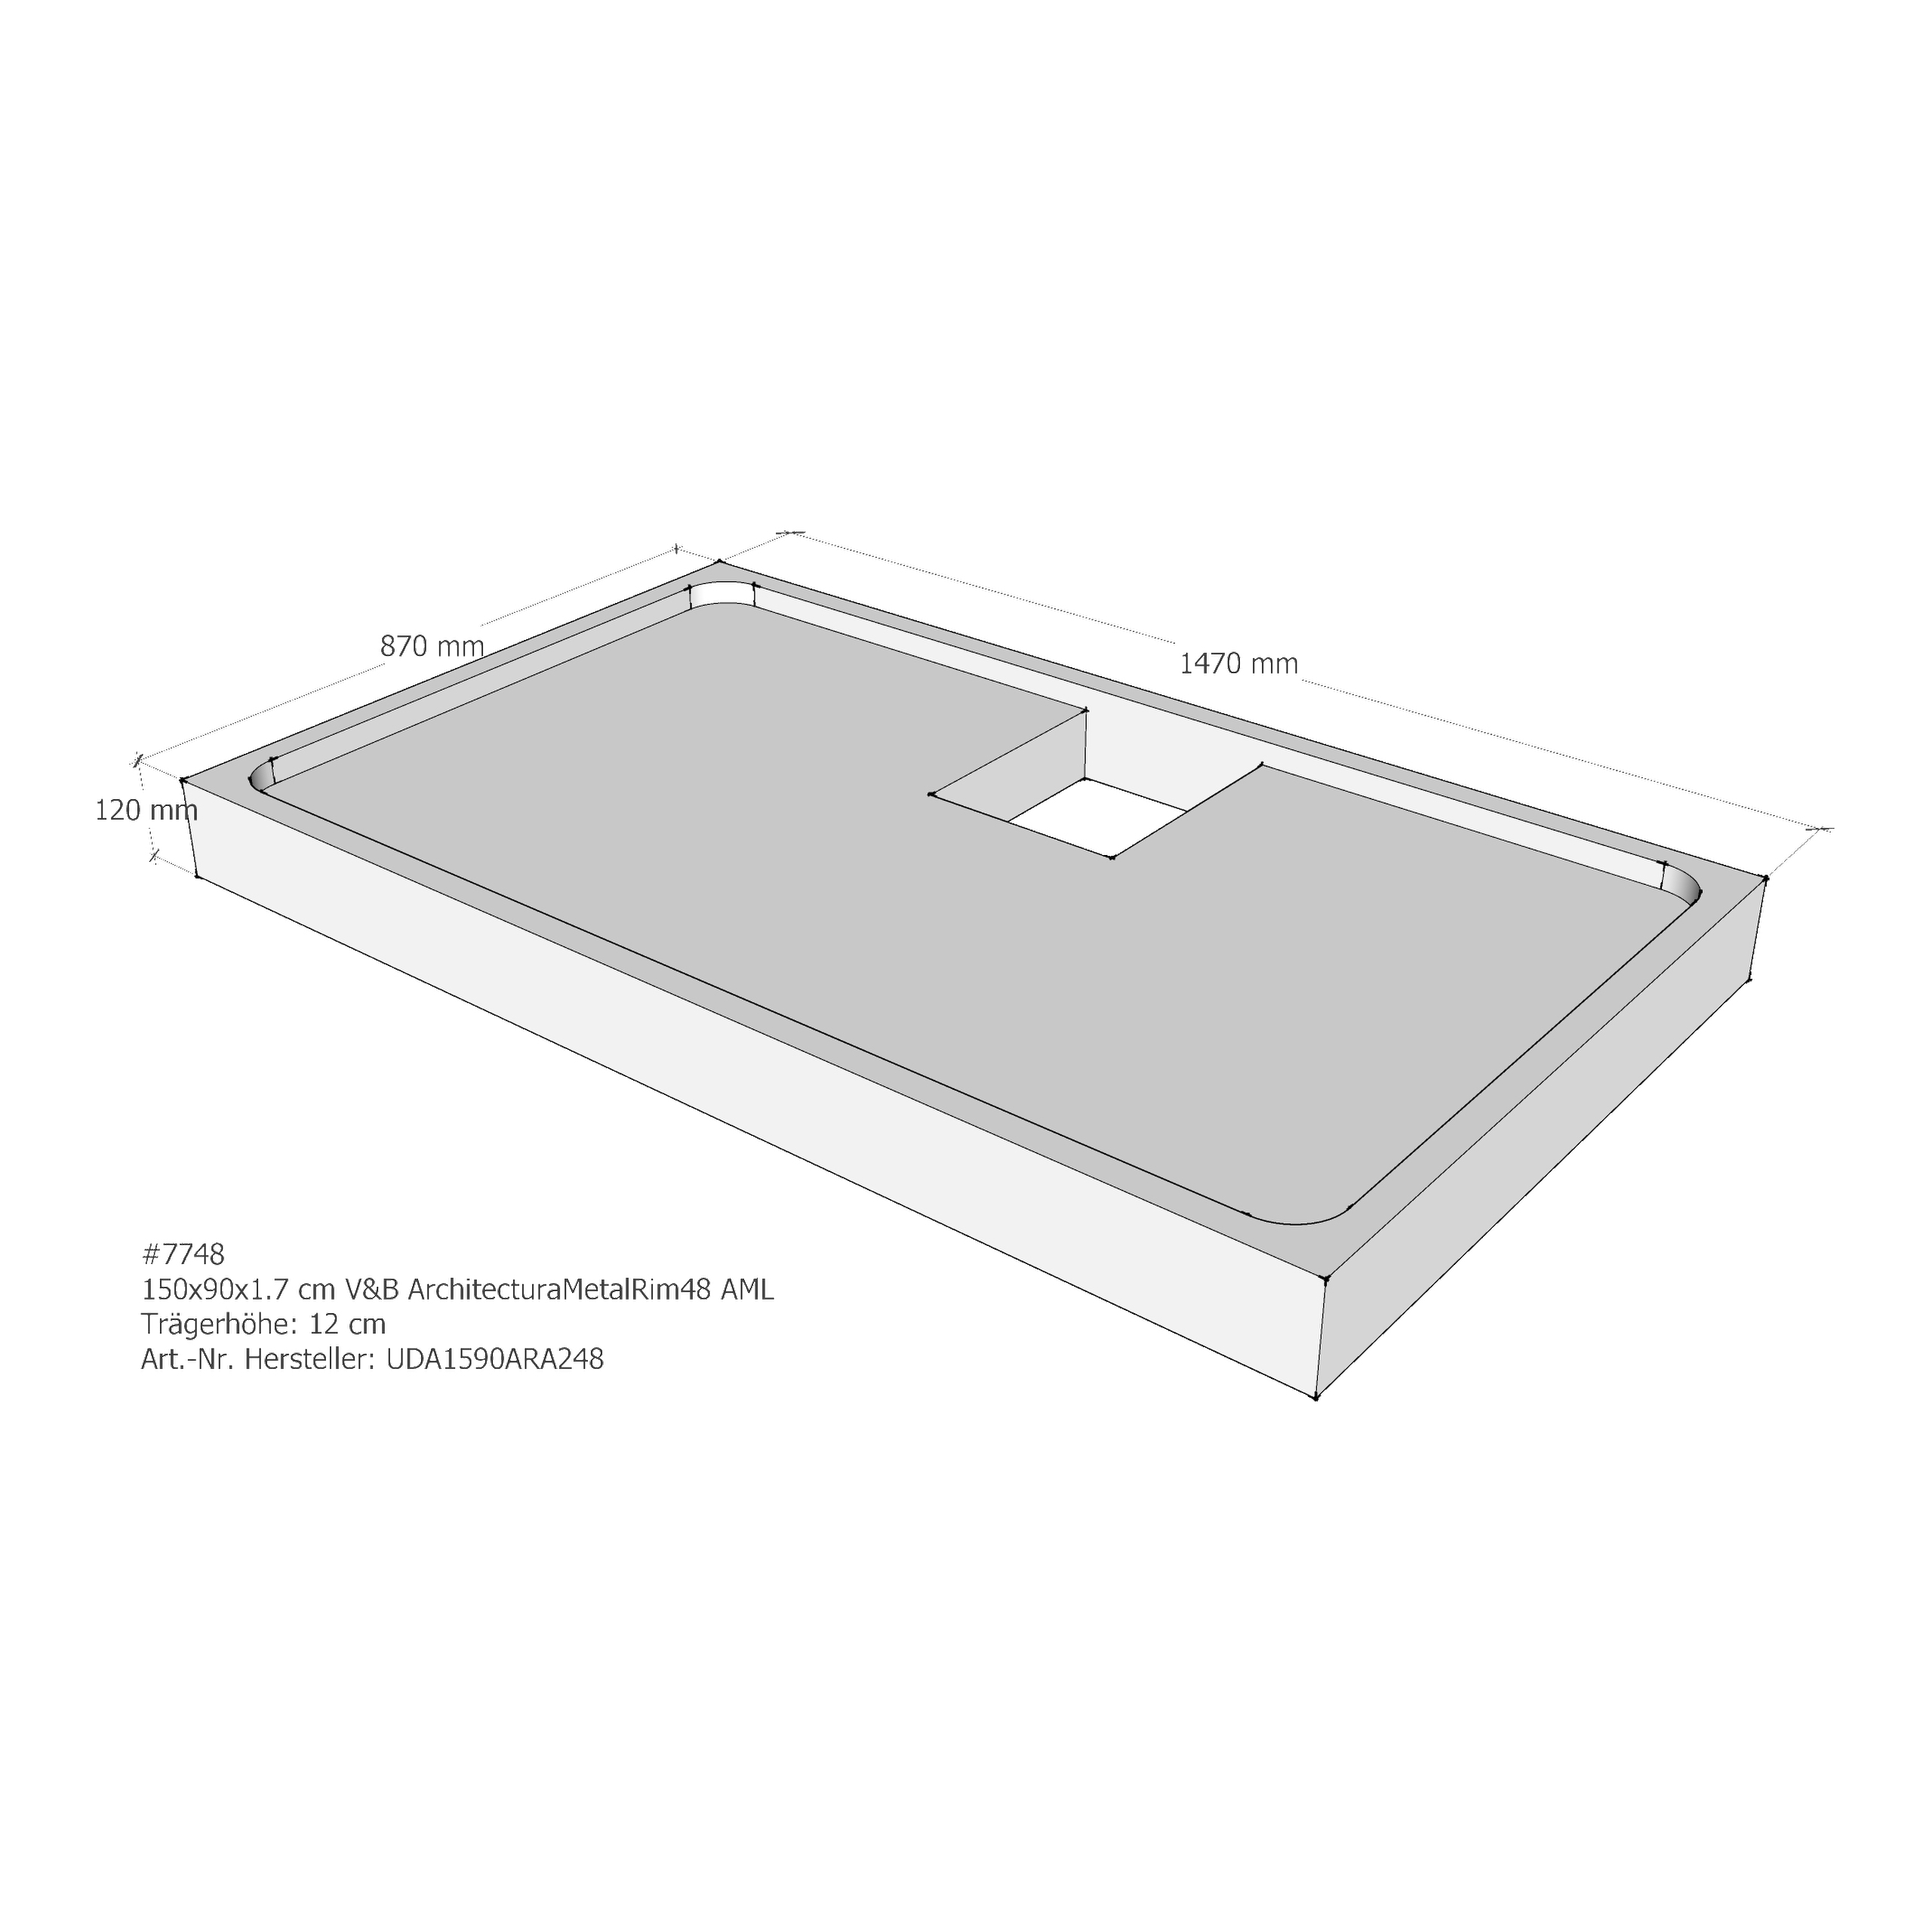 Duschwannenträger für Villeroy & Boch Architectura MetalRim 150 × 90 × 1,7 cm